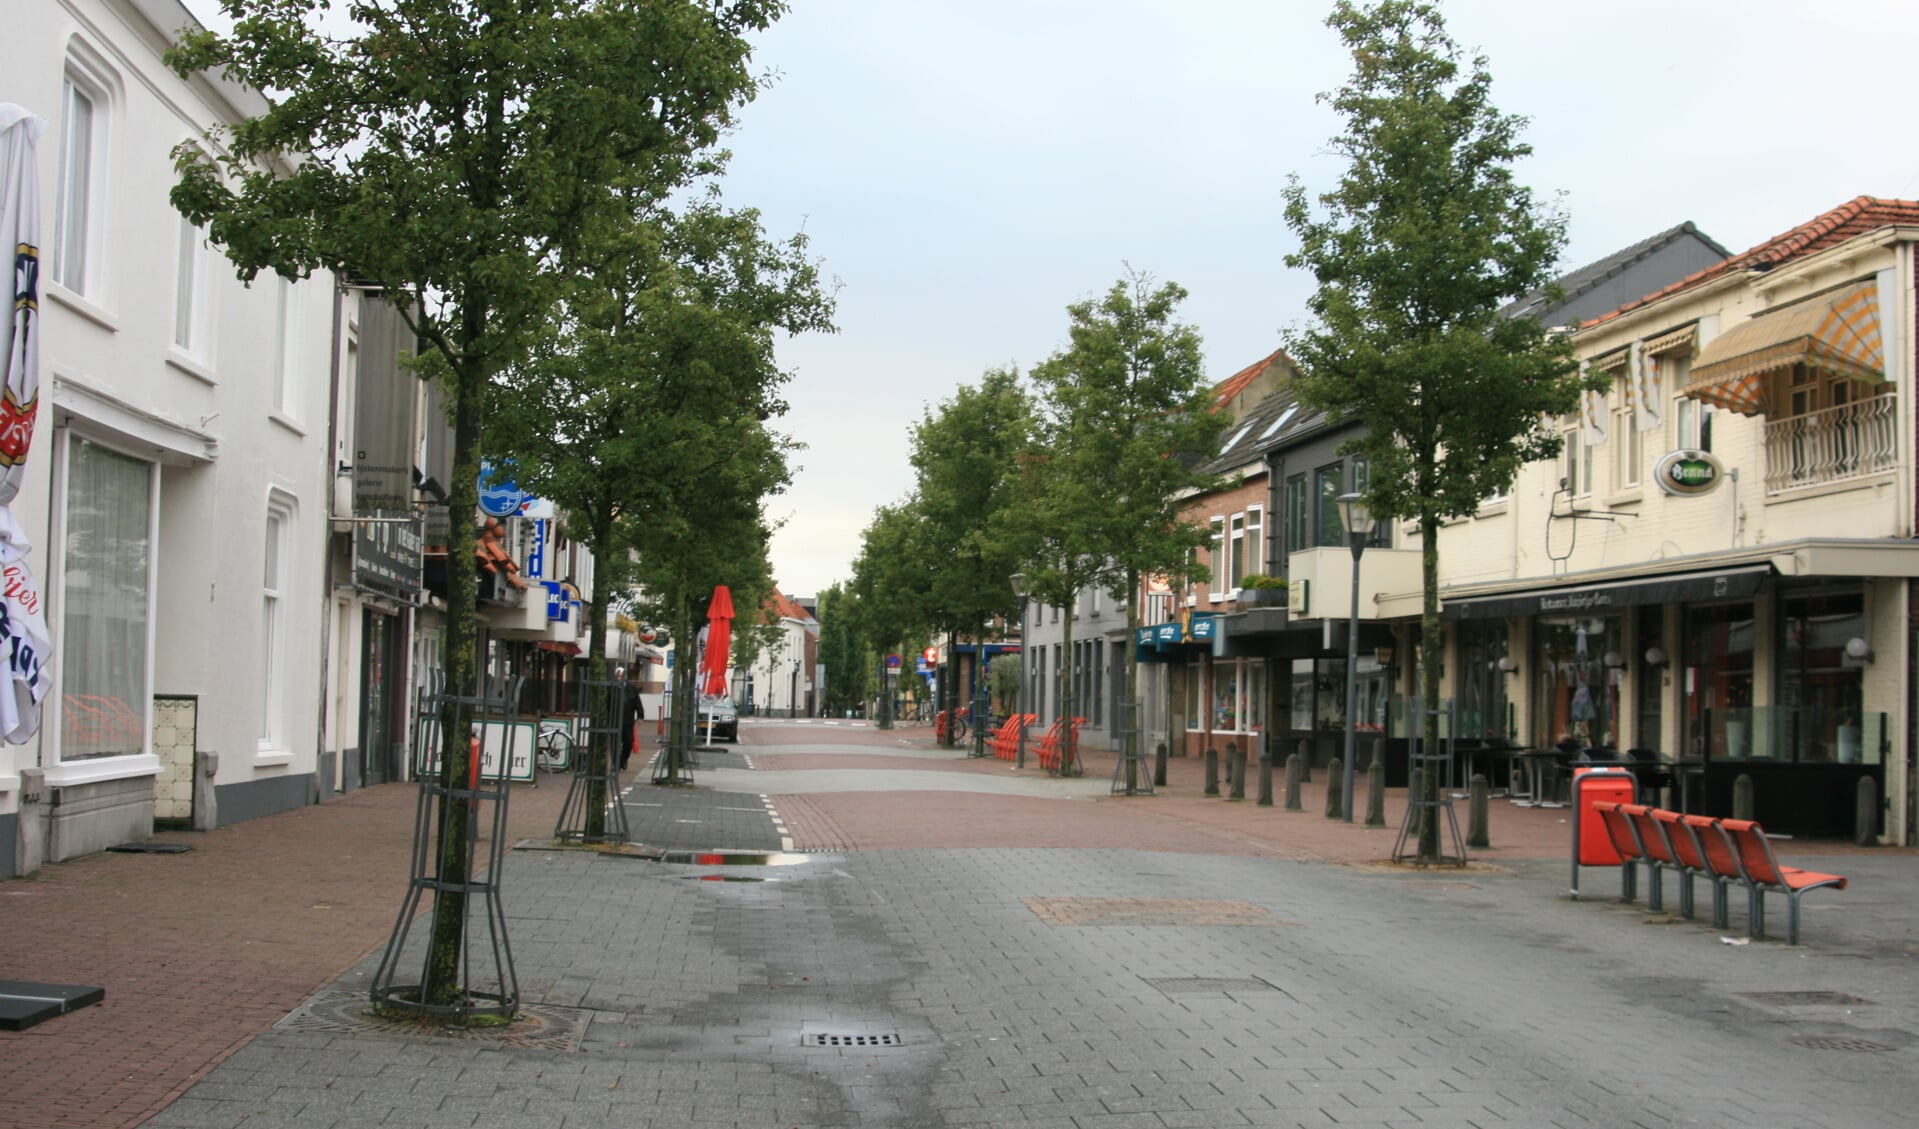 Grotestraat in Cuijk.